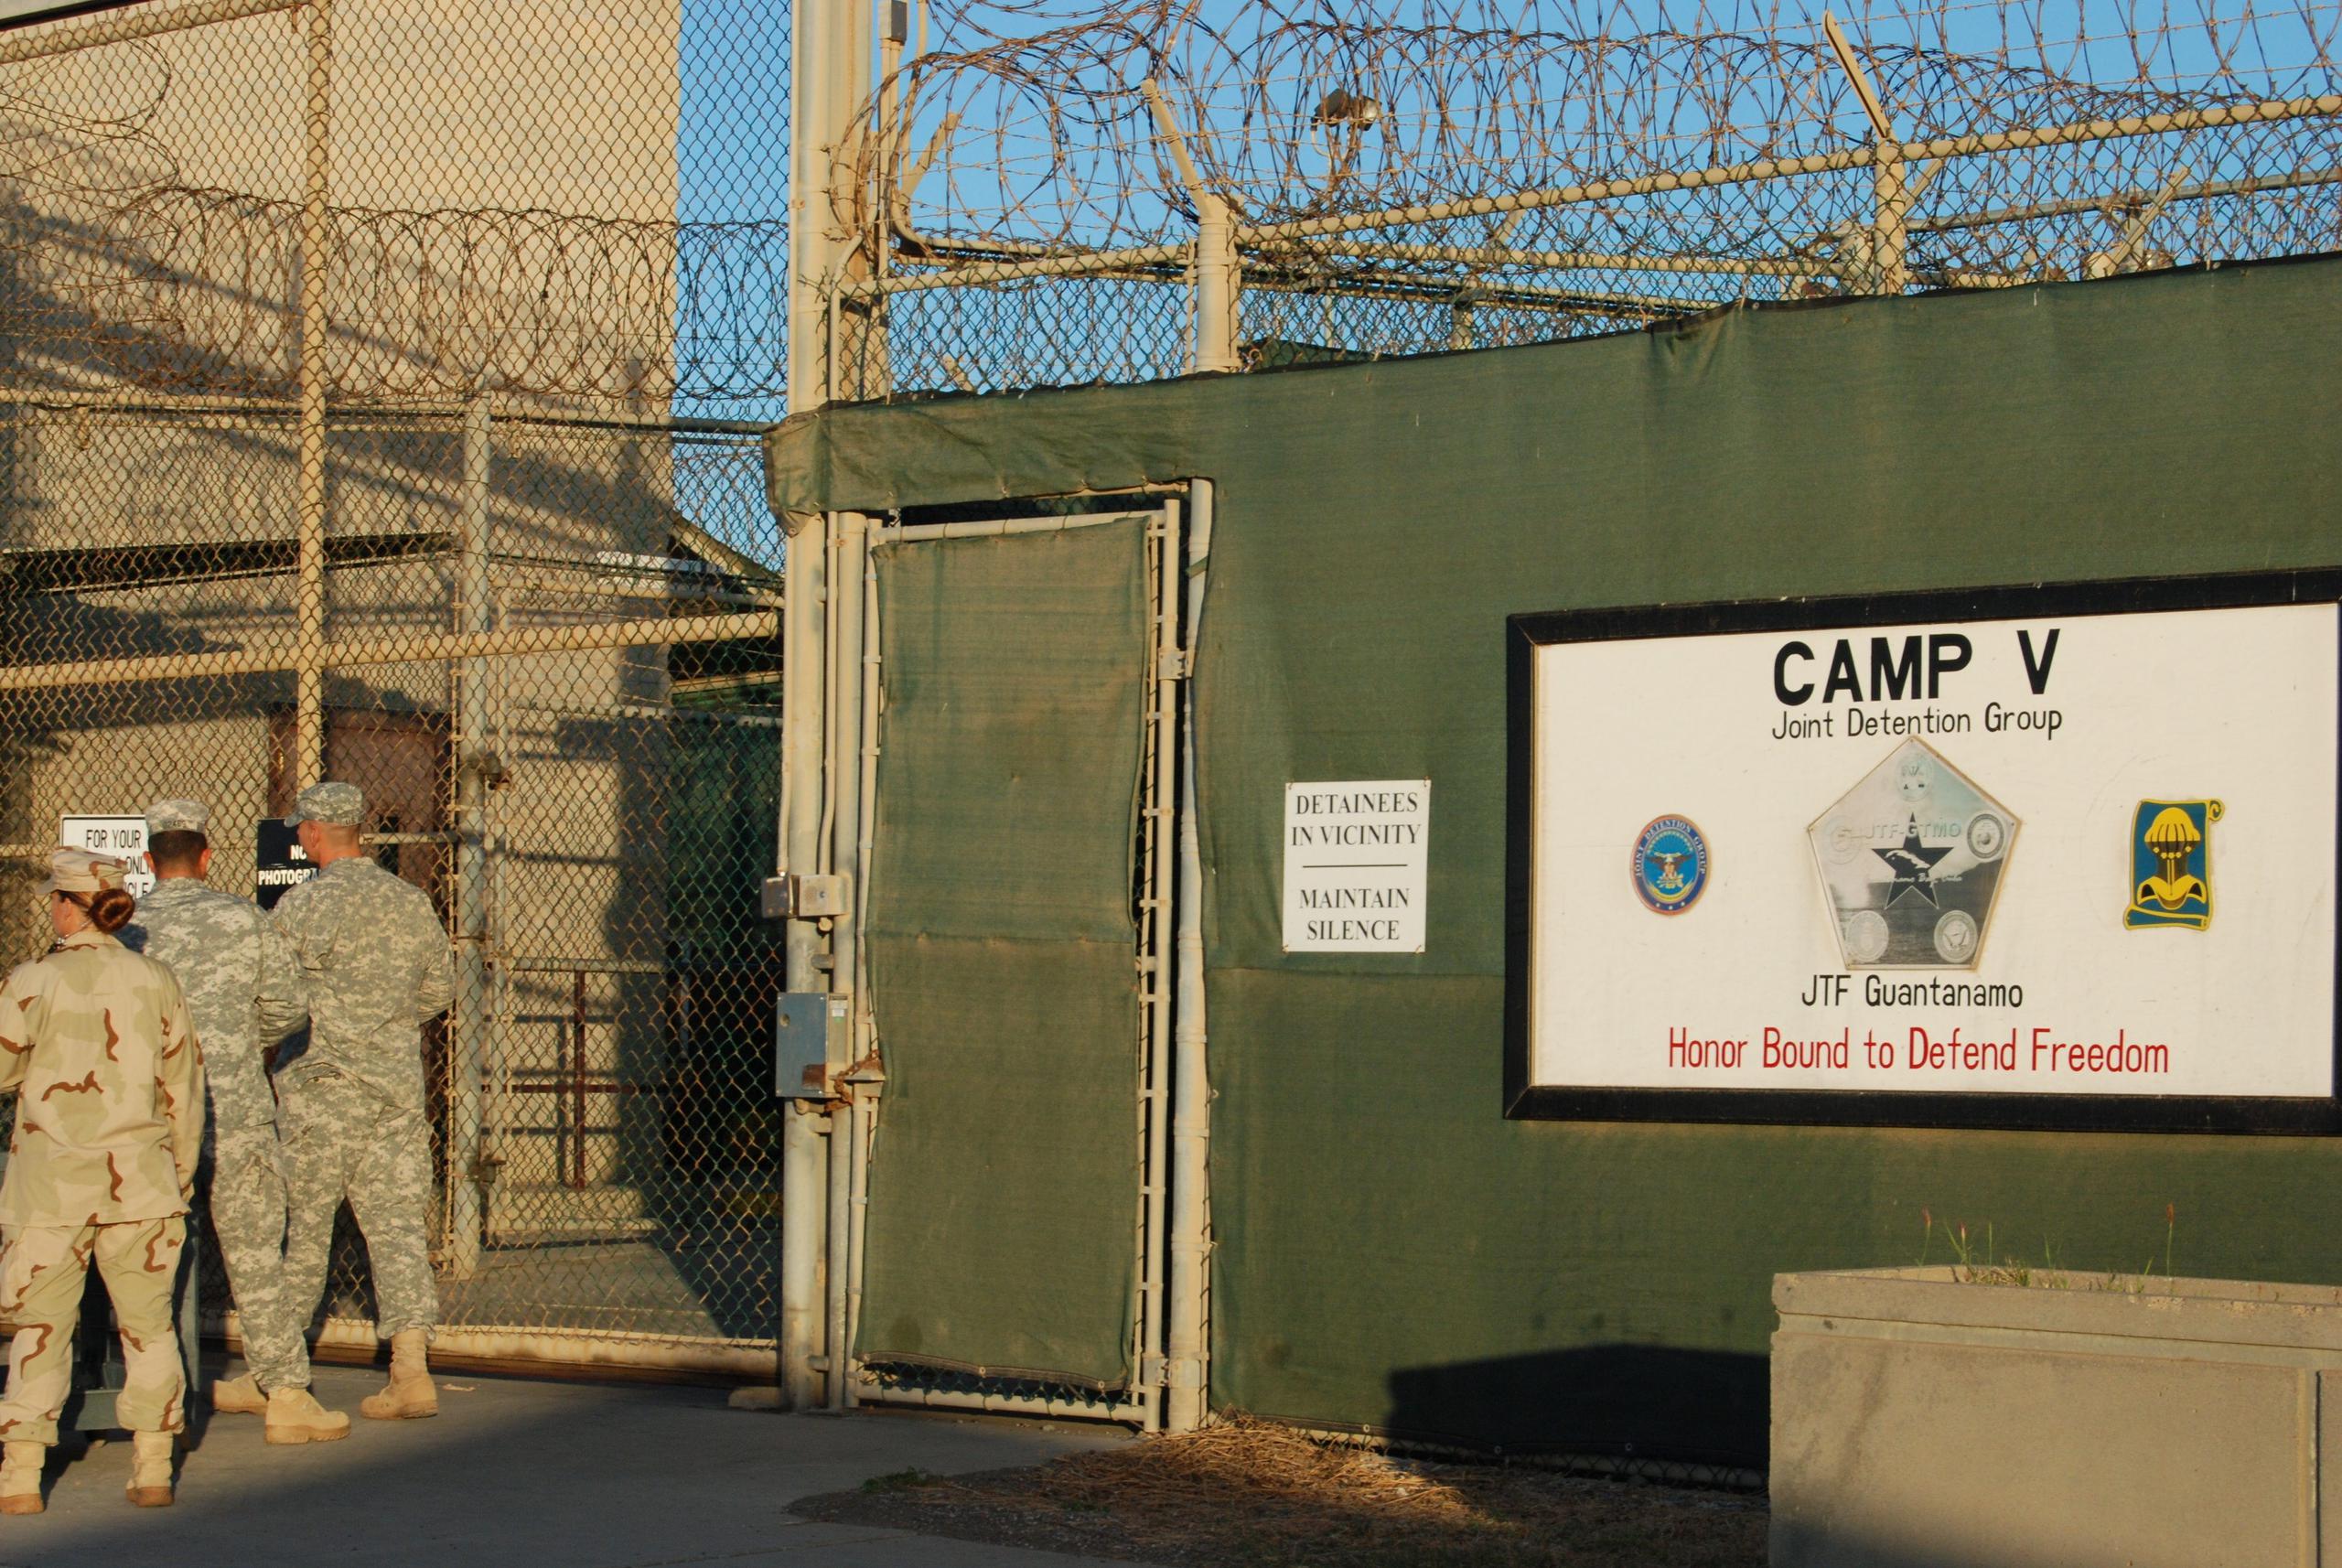 Vista de la entrada al campamento V de la Base Naval de Guantánamo